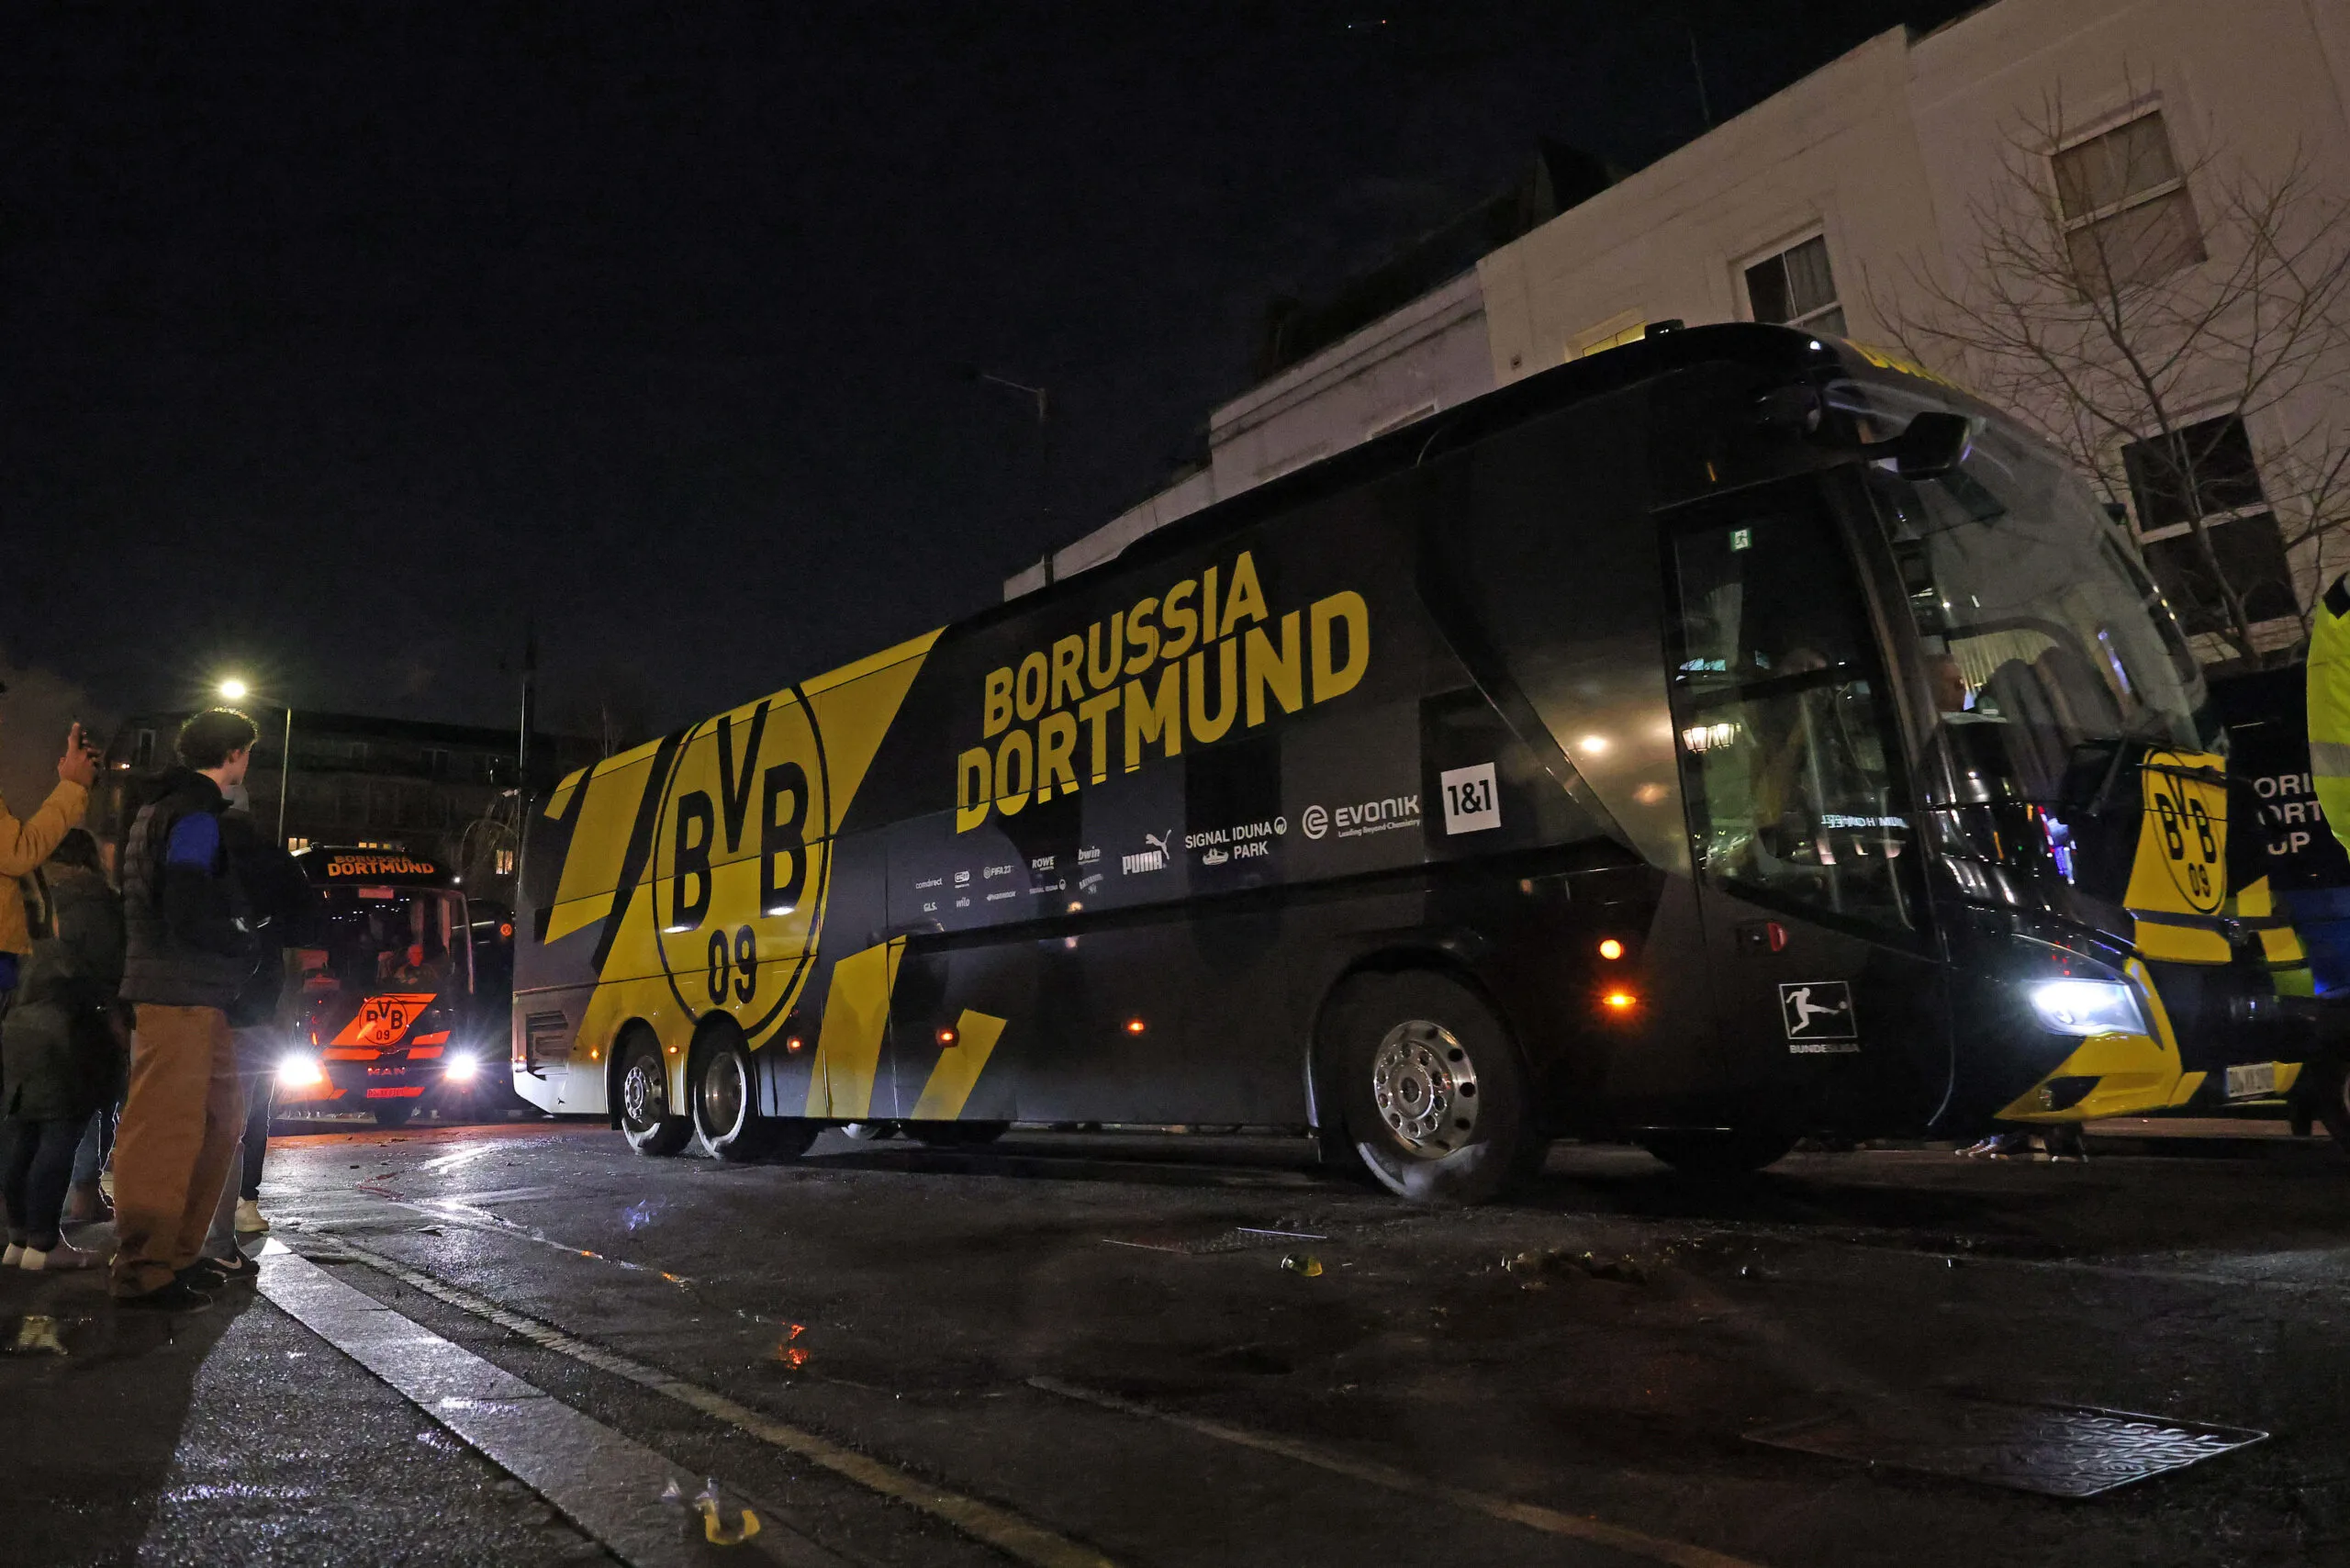 Le bus du Borussia Dortmund revient de Newcastle avec une prune